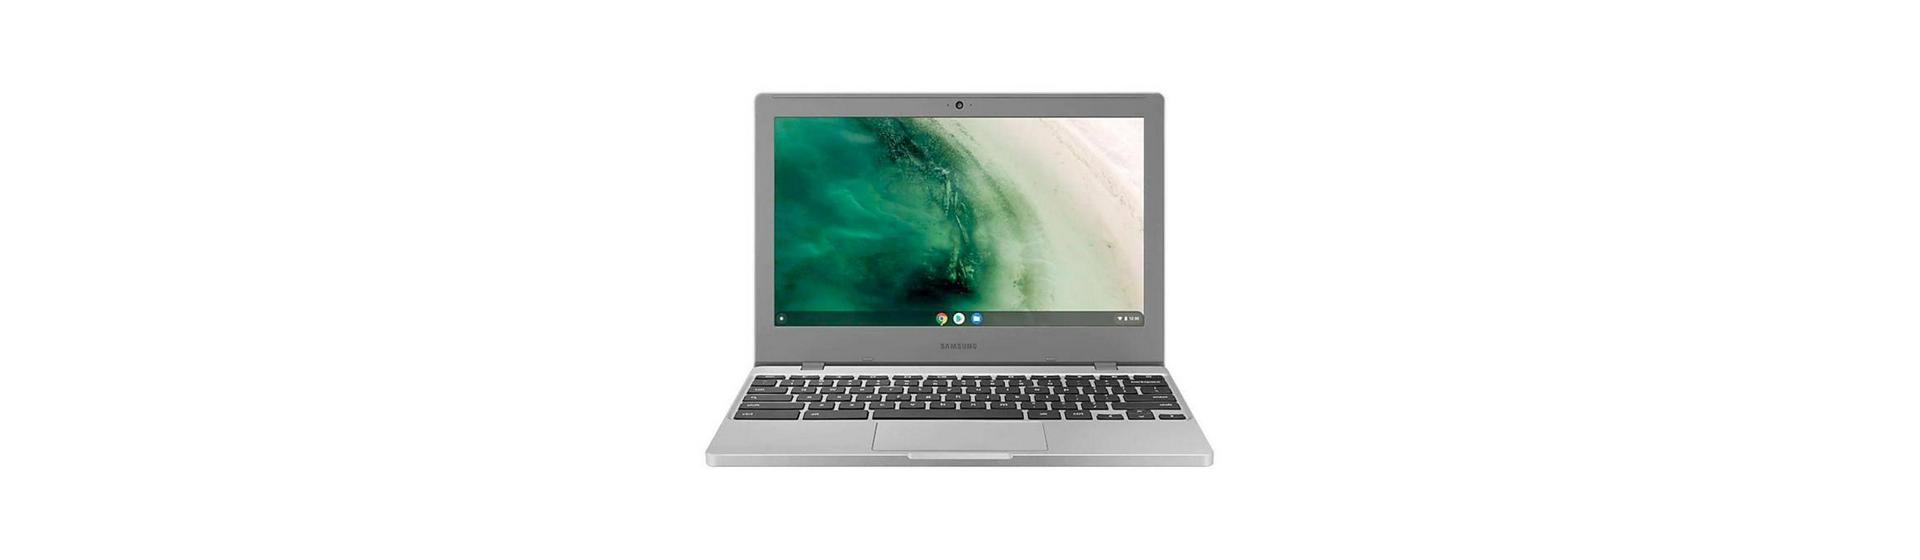 Samsung Chromebook 4: um notebook com sistema do G - Samsung